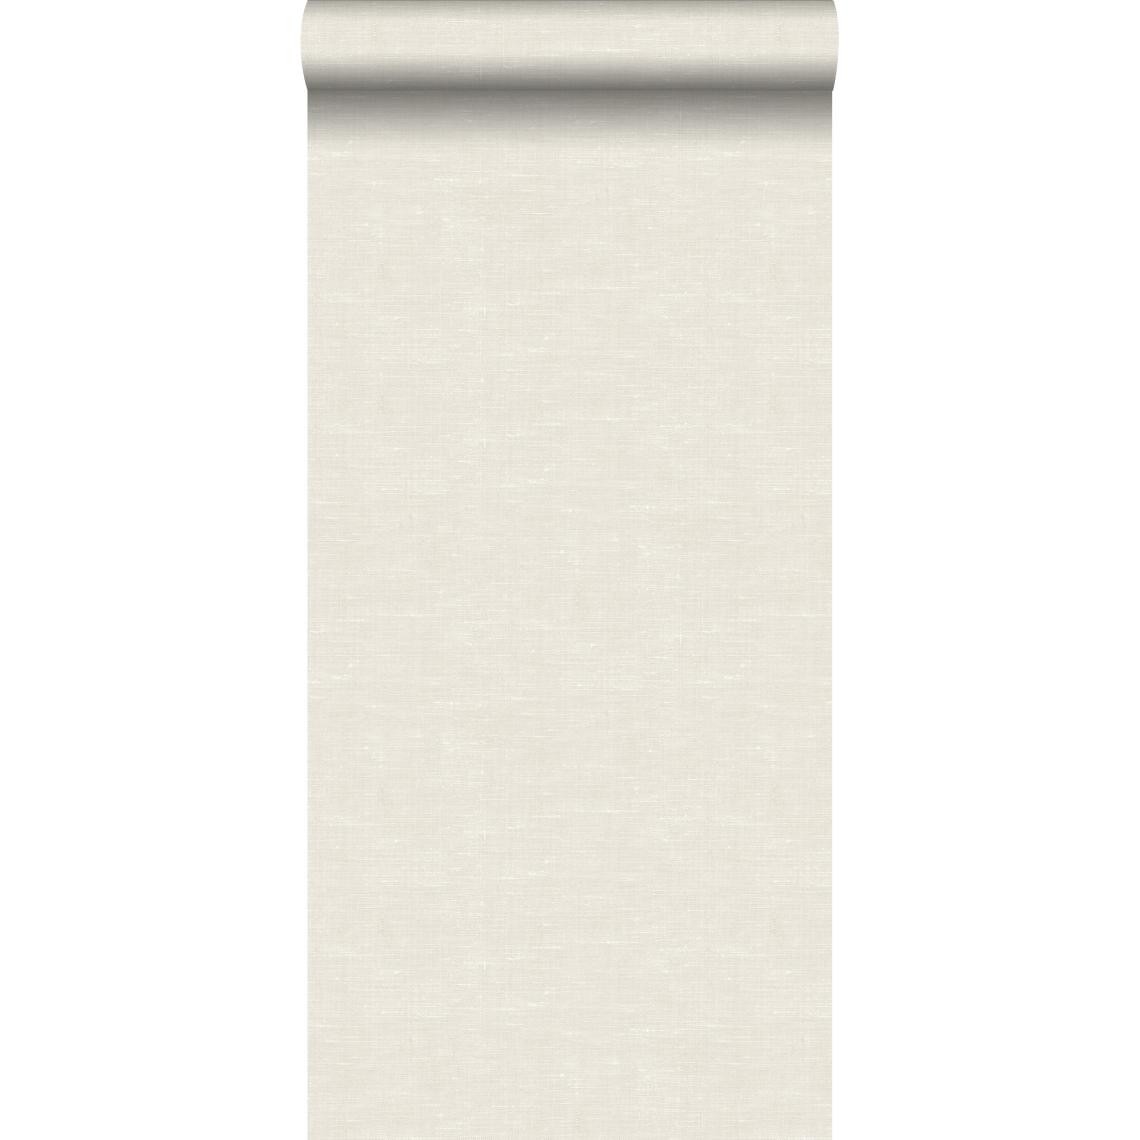 ESTAhome - ESTAhome papier peint lin beige crème clair - 148691 - 53 cm x 10,05 m - Papier peint